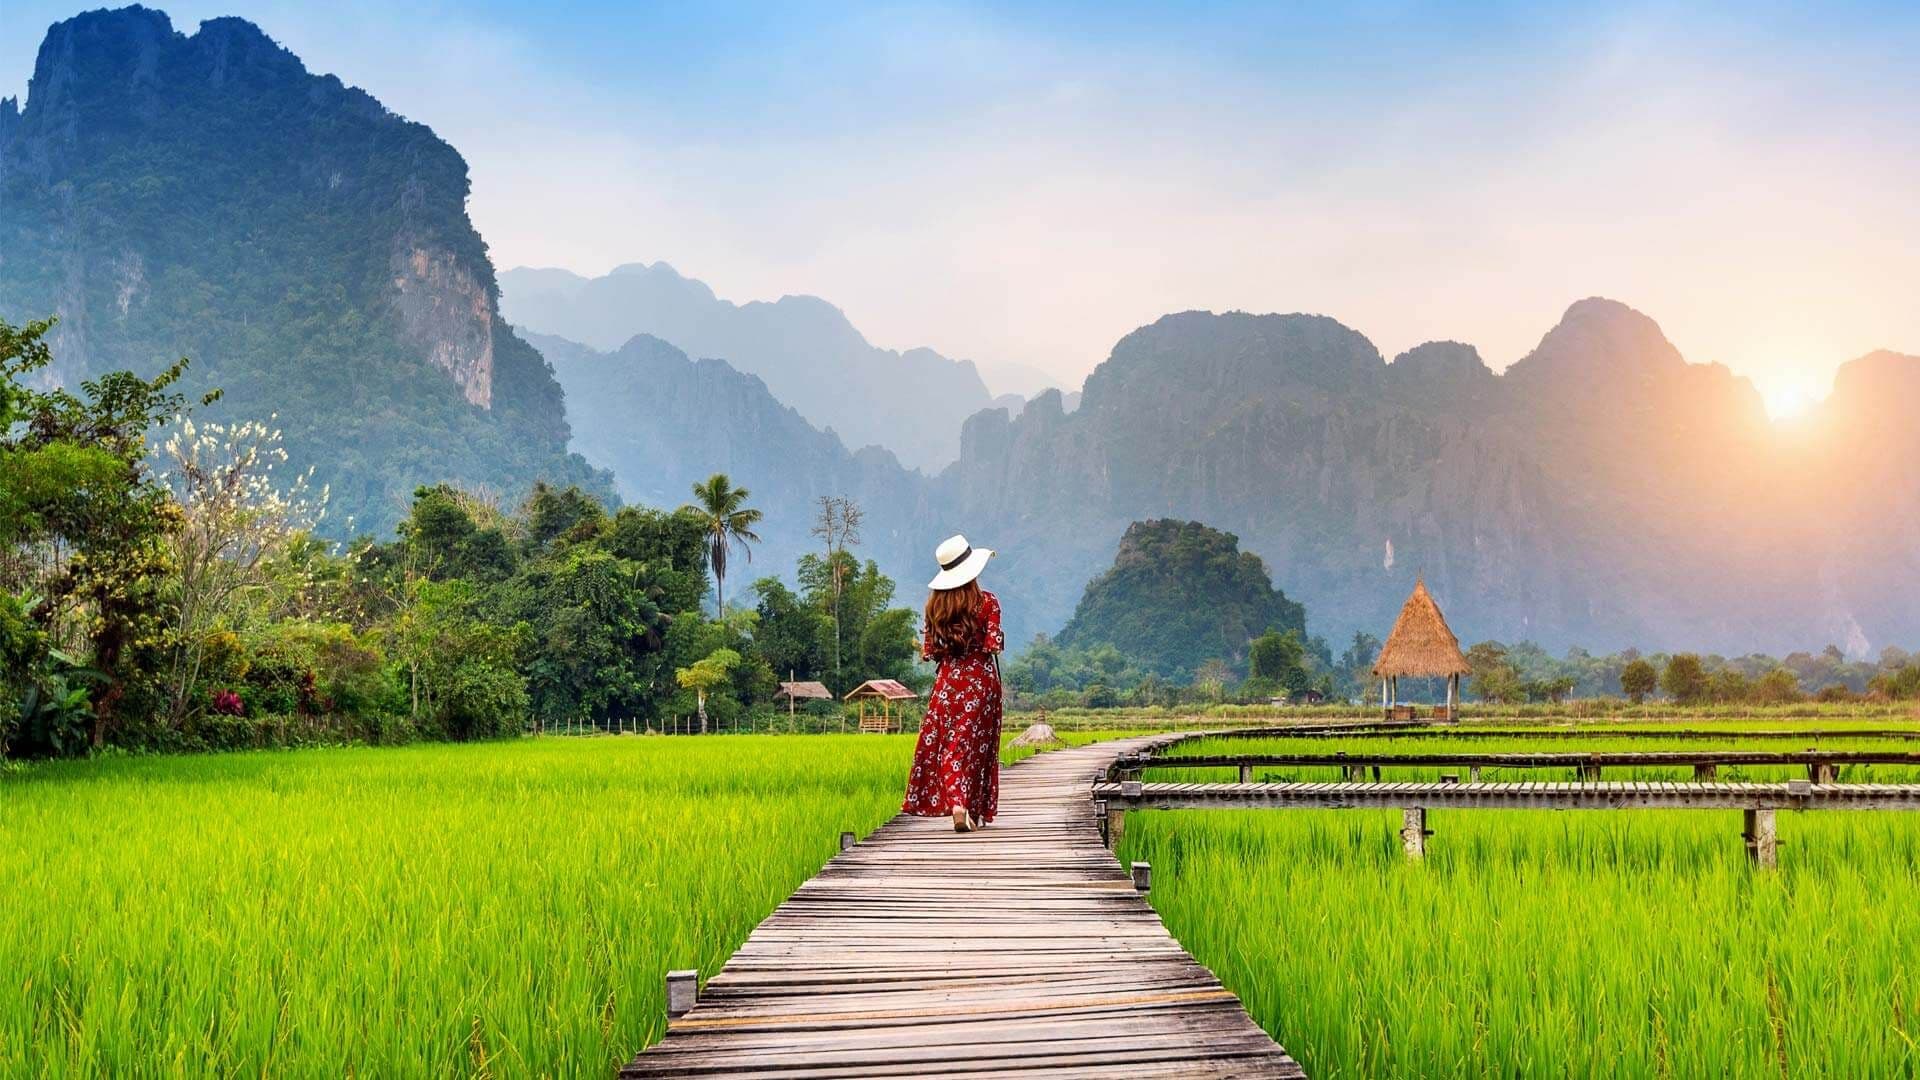 Let's Explore Laos!